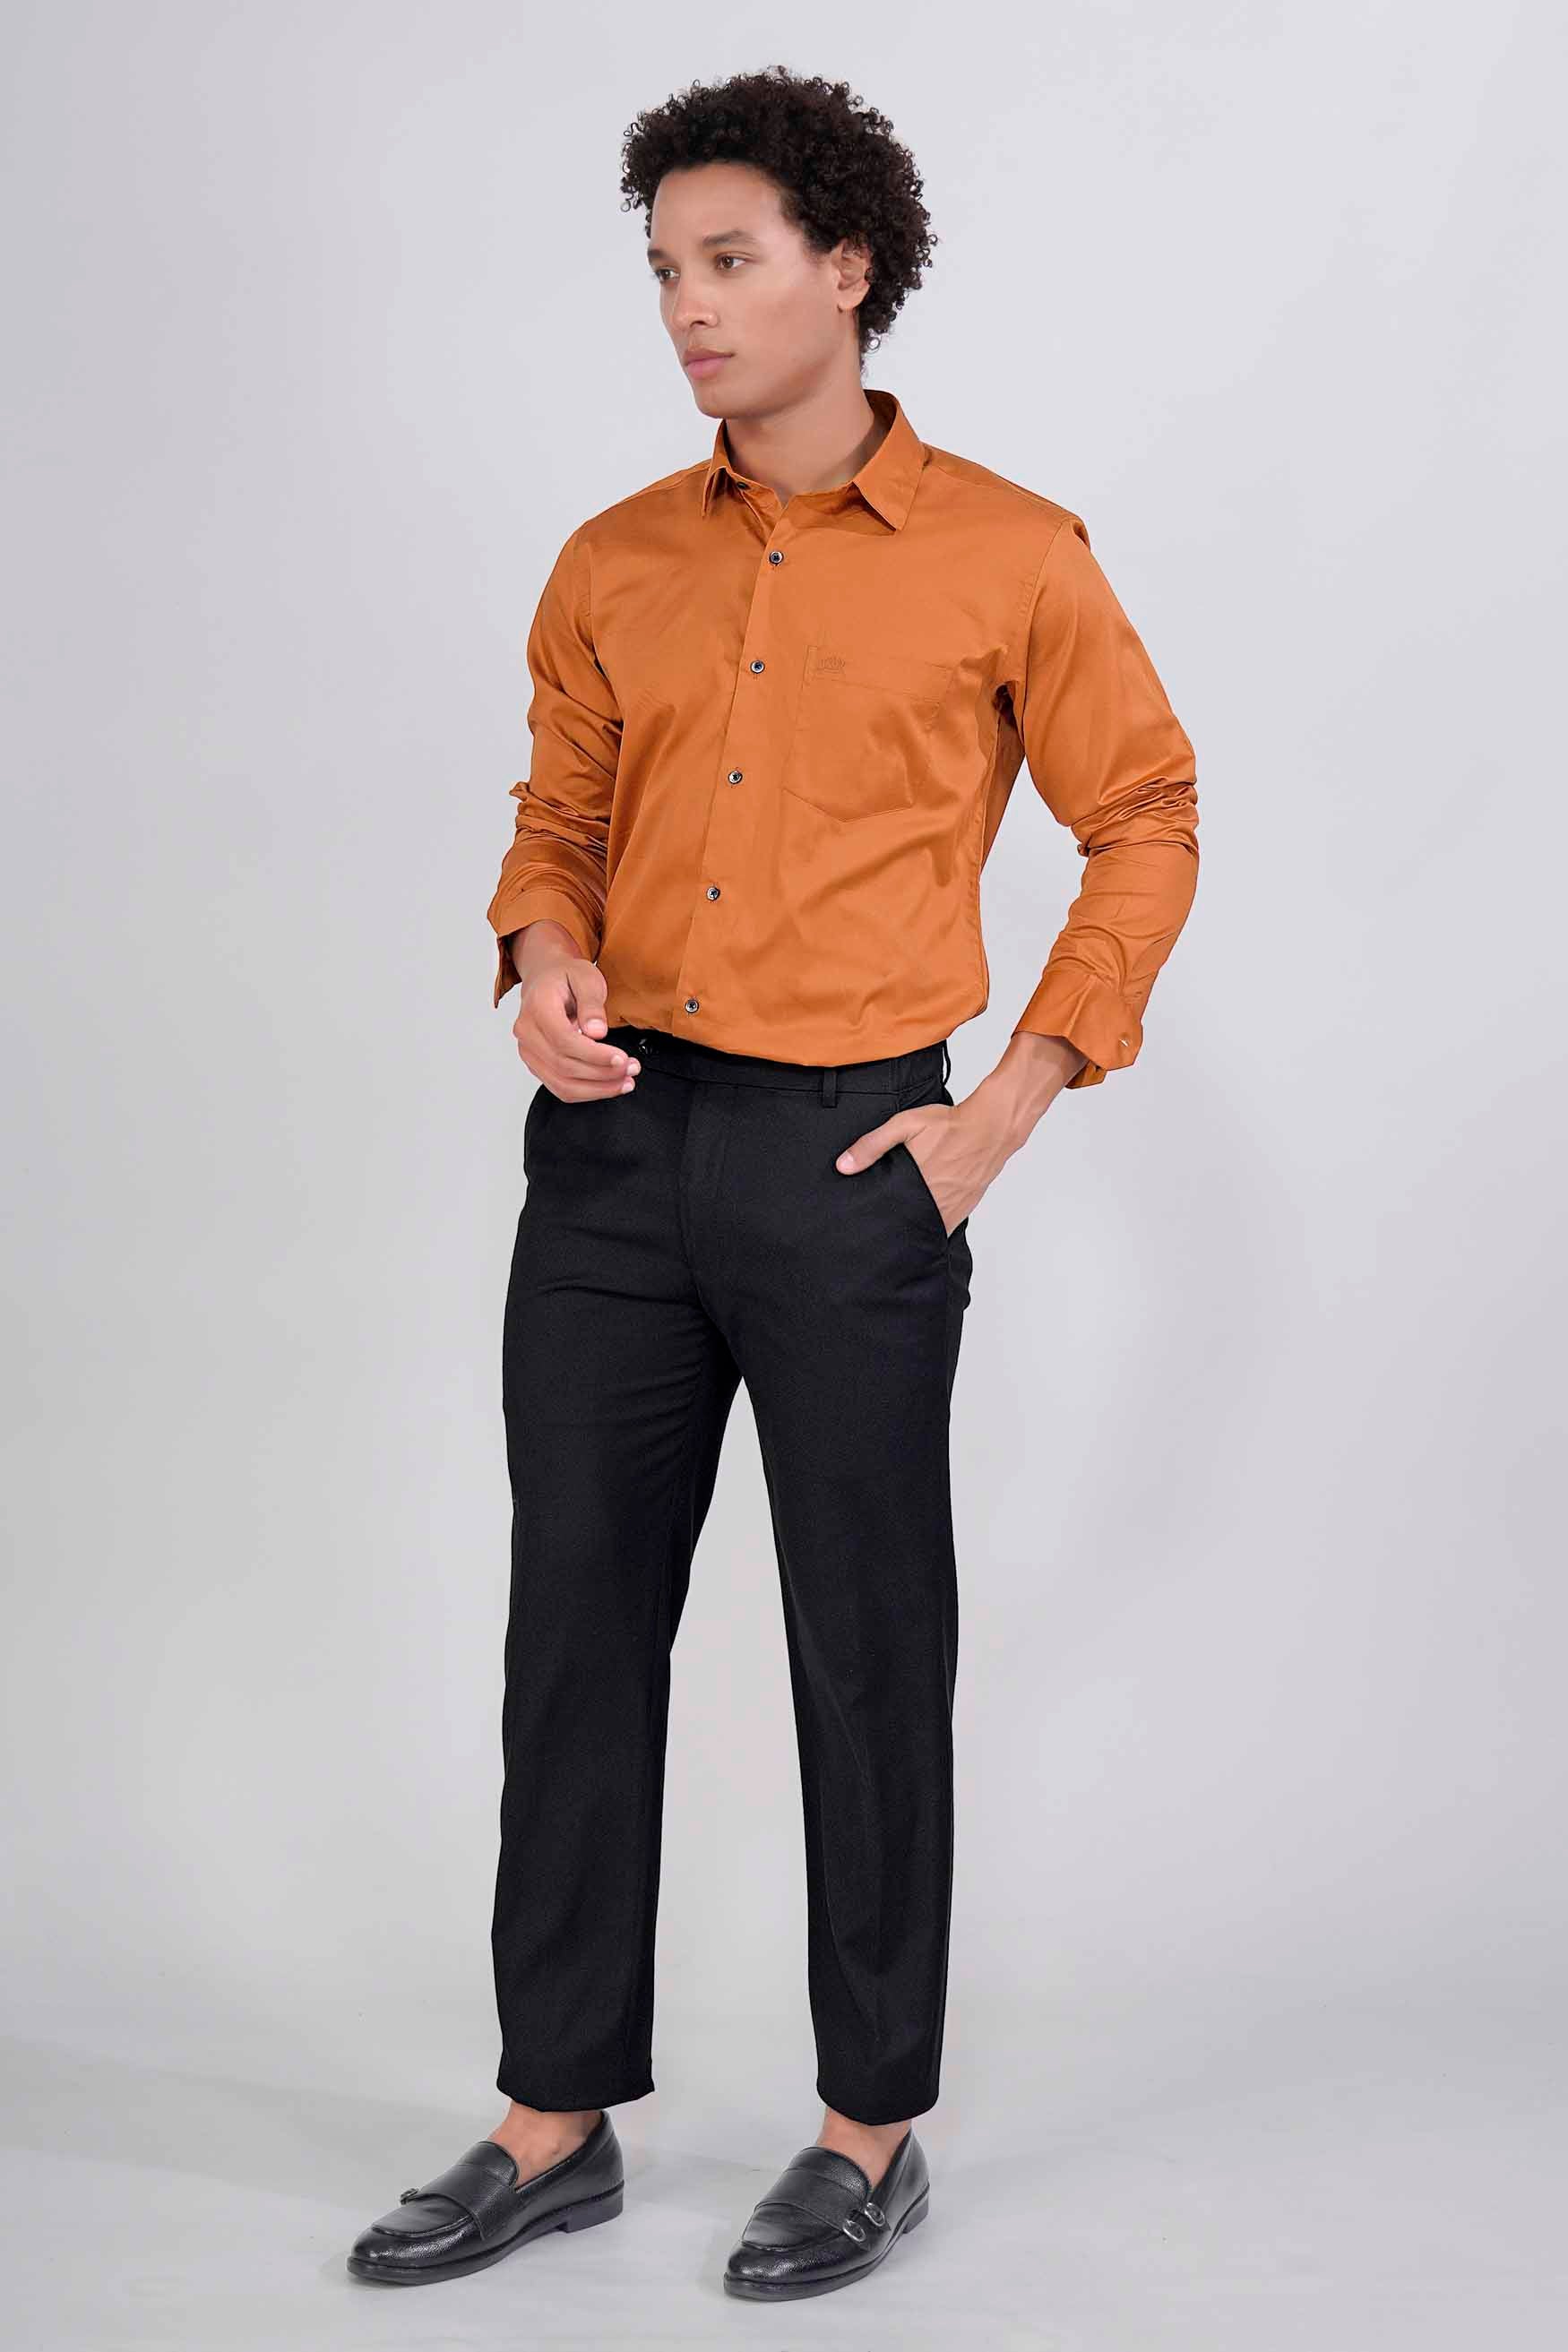 Raw Sienna Orange Subtle Sheen Super Soft Premium Cotton Shirt